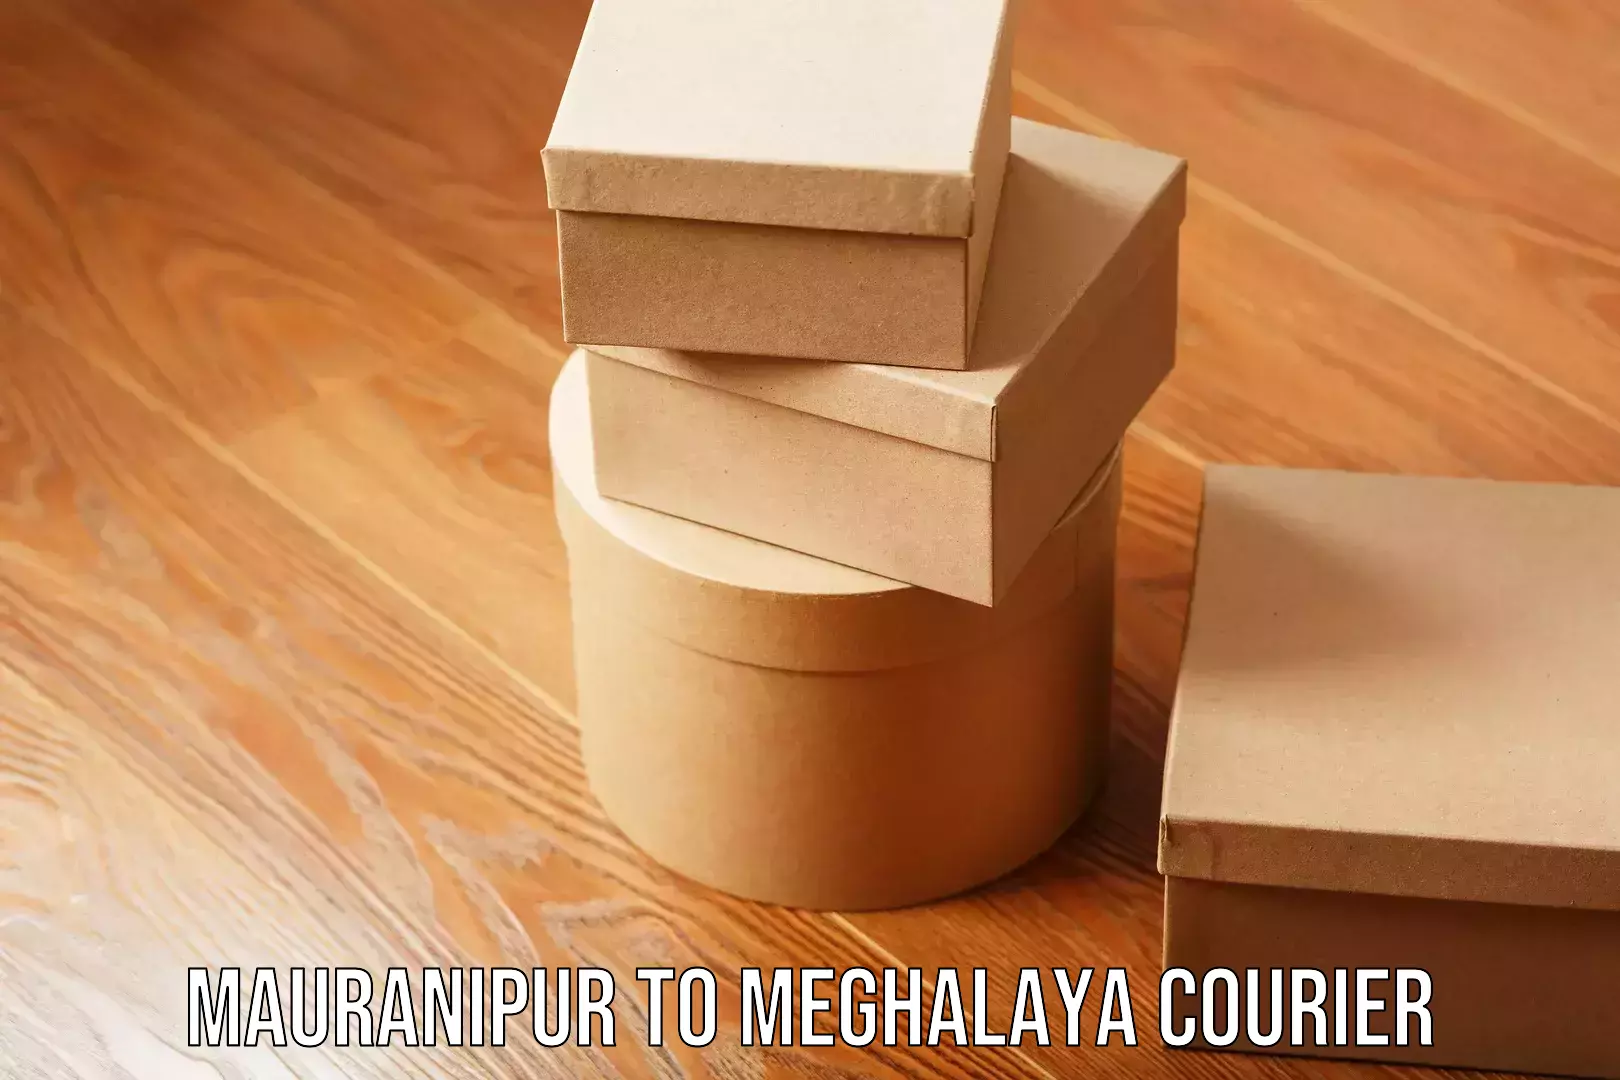 Furniture moving experts Mauranipur to Meghalaya